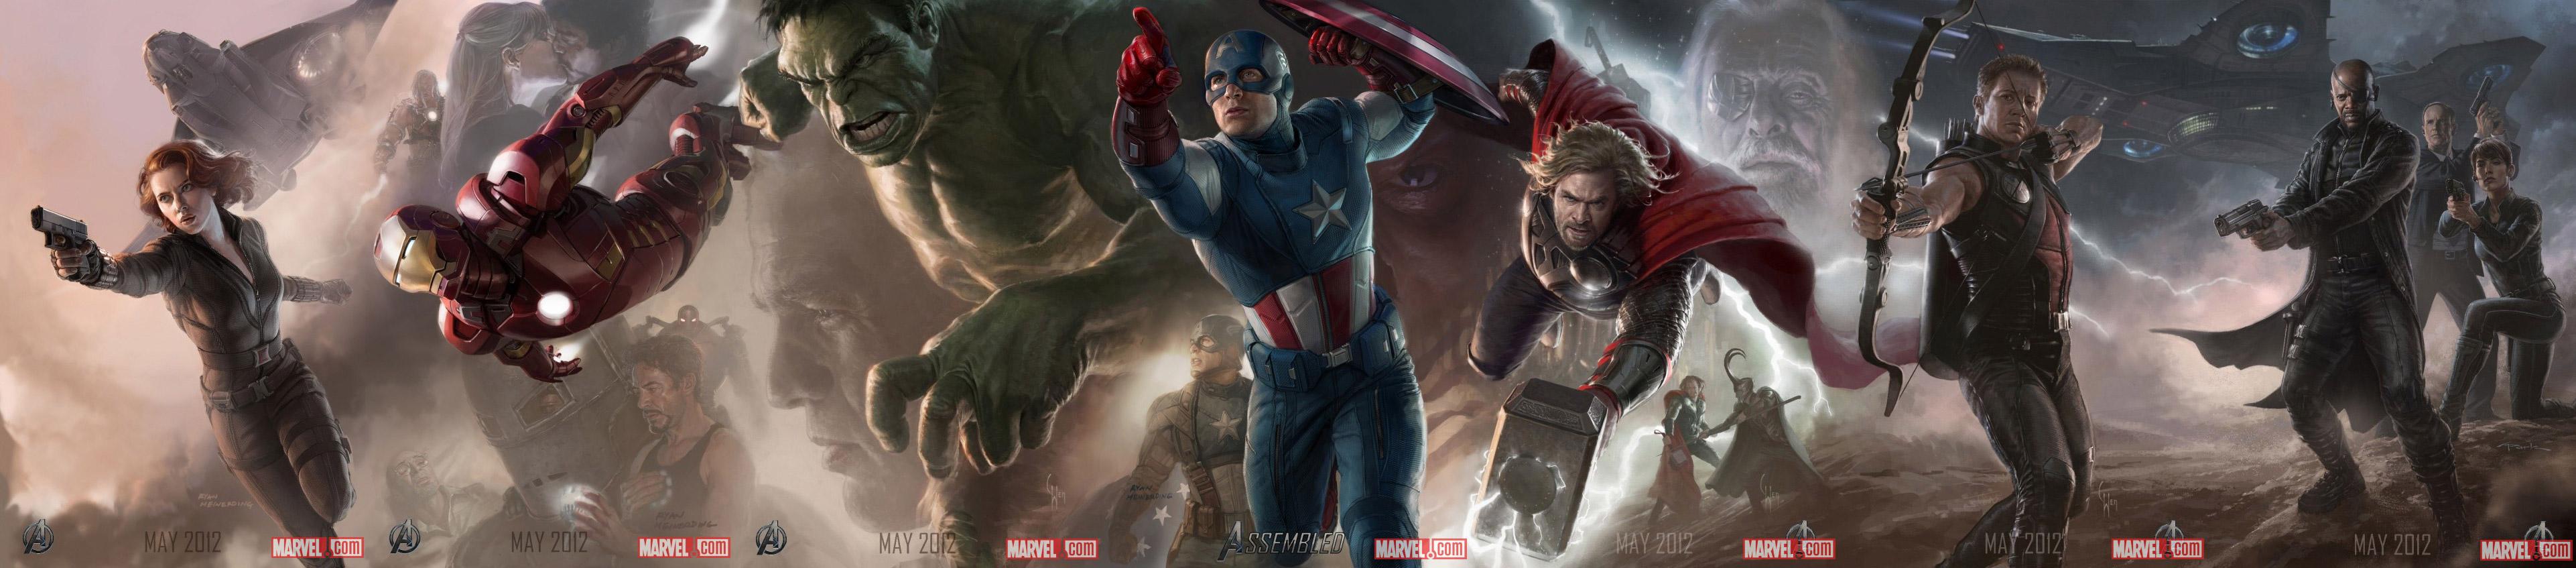 Les artworks de The Avengers (photos)